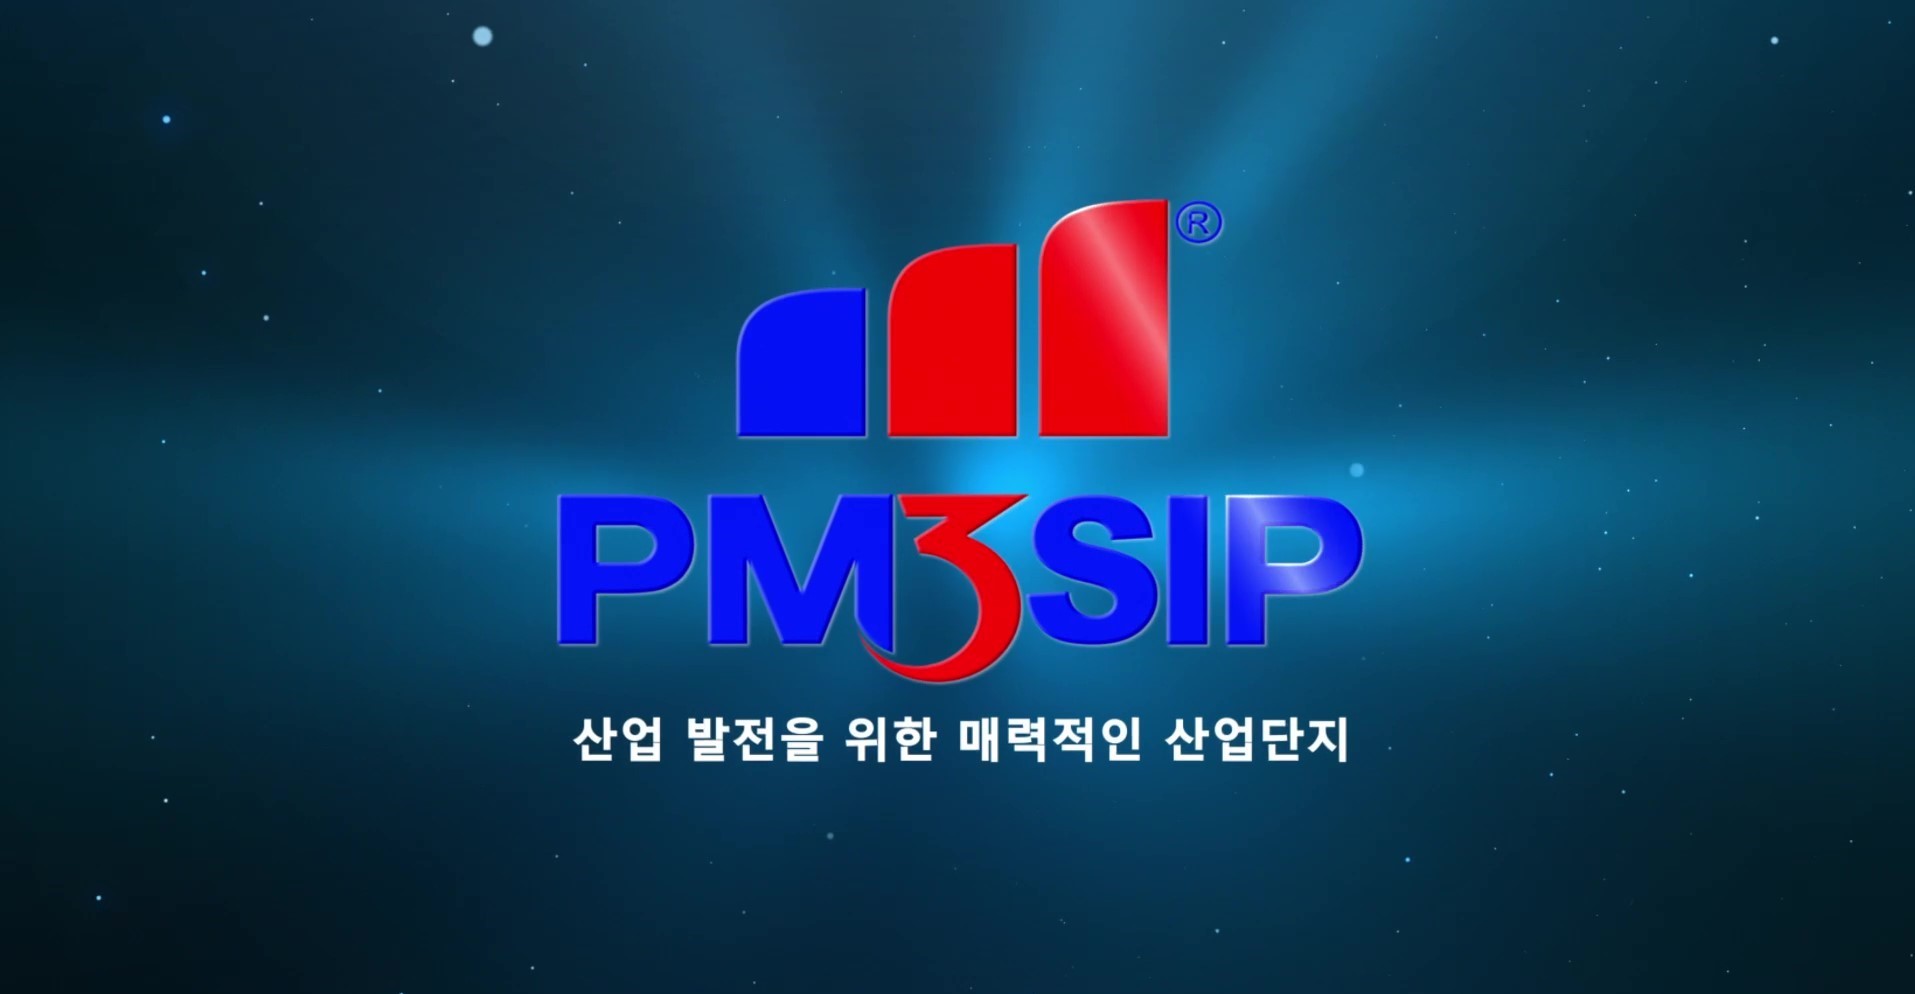 푸미3특화산업단지 소개 영상